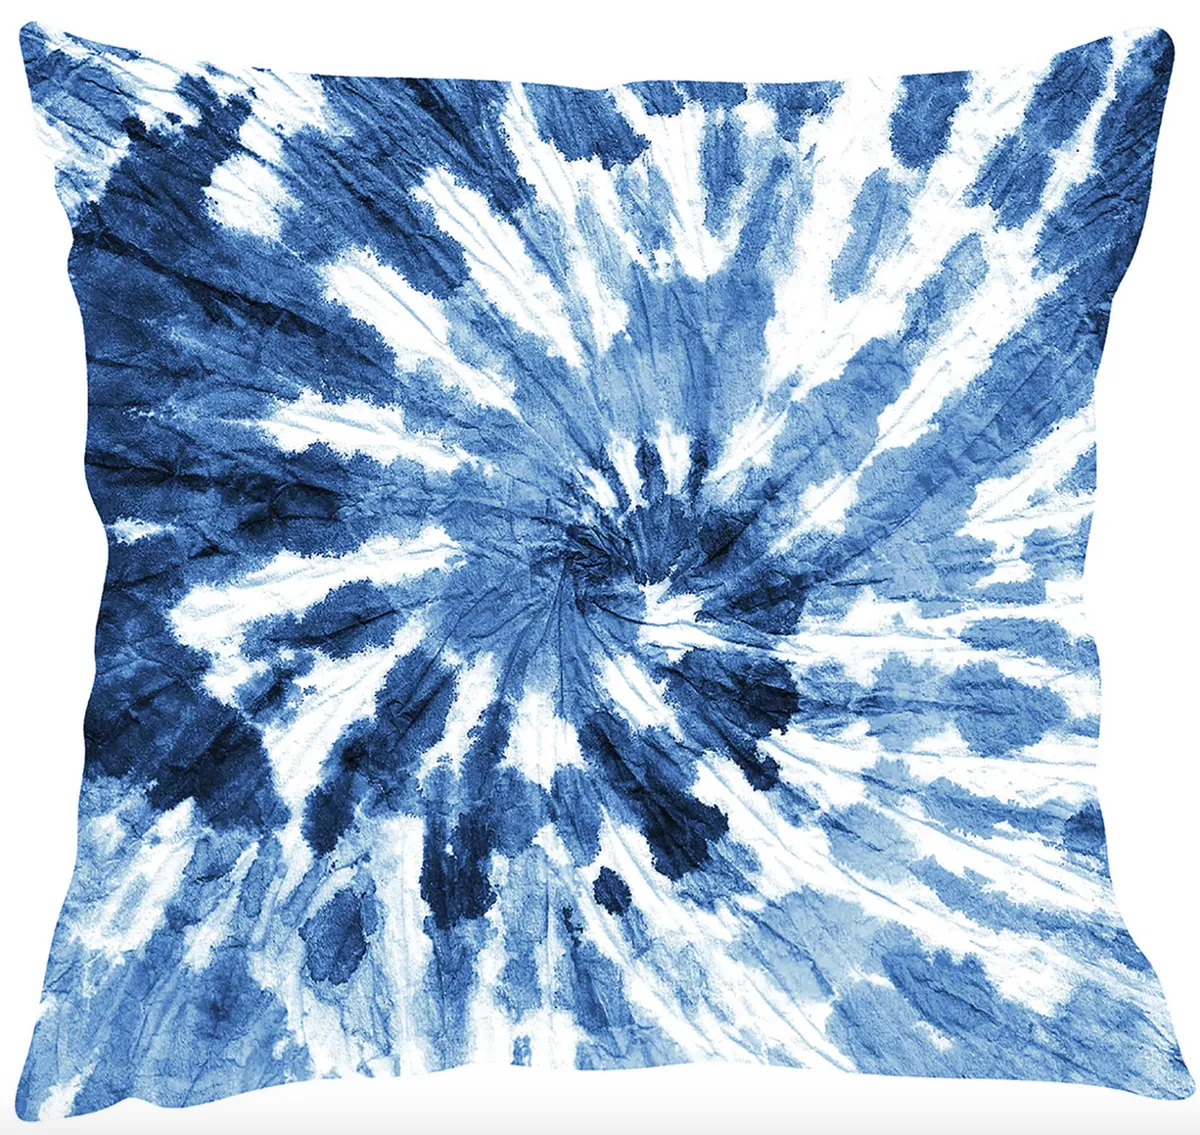 Blue-Grey Tie Dye Cushion Cover, £12.99, Etsy